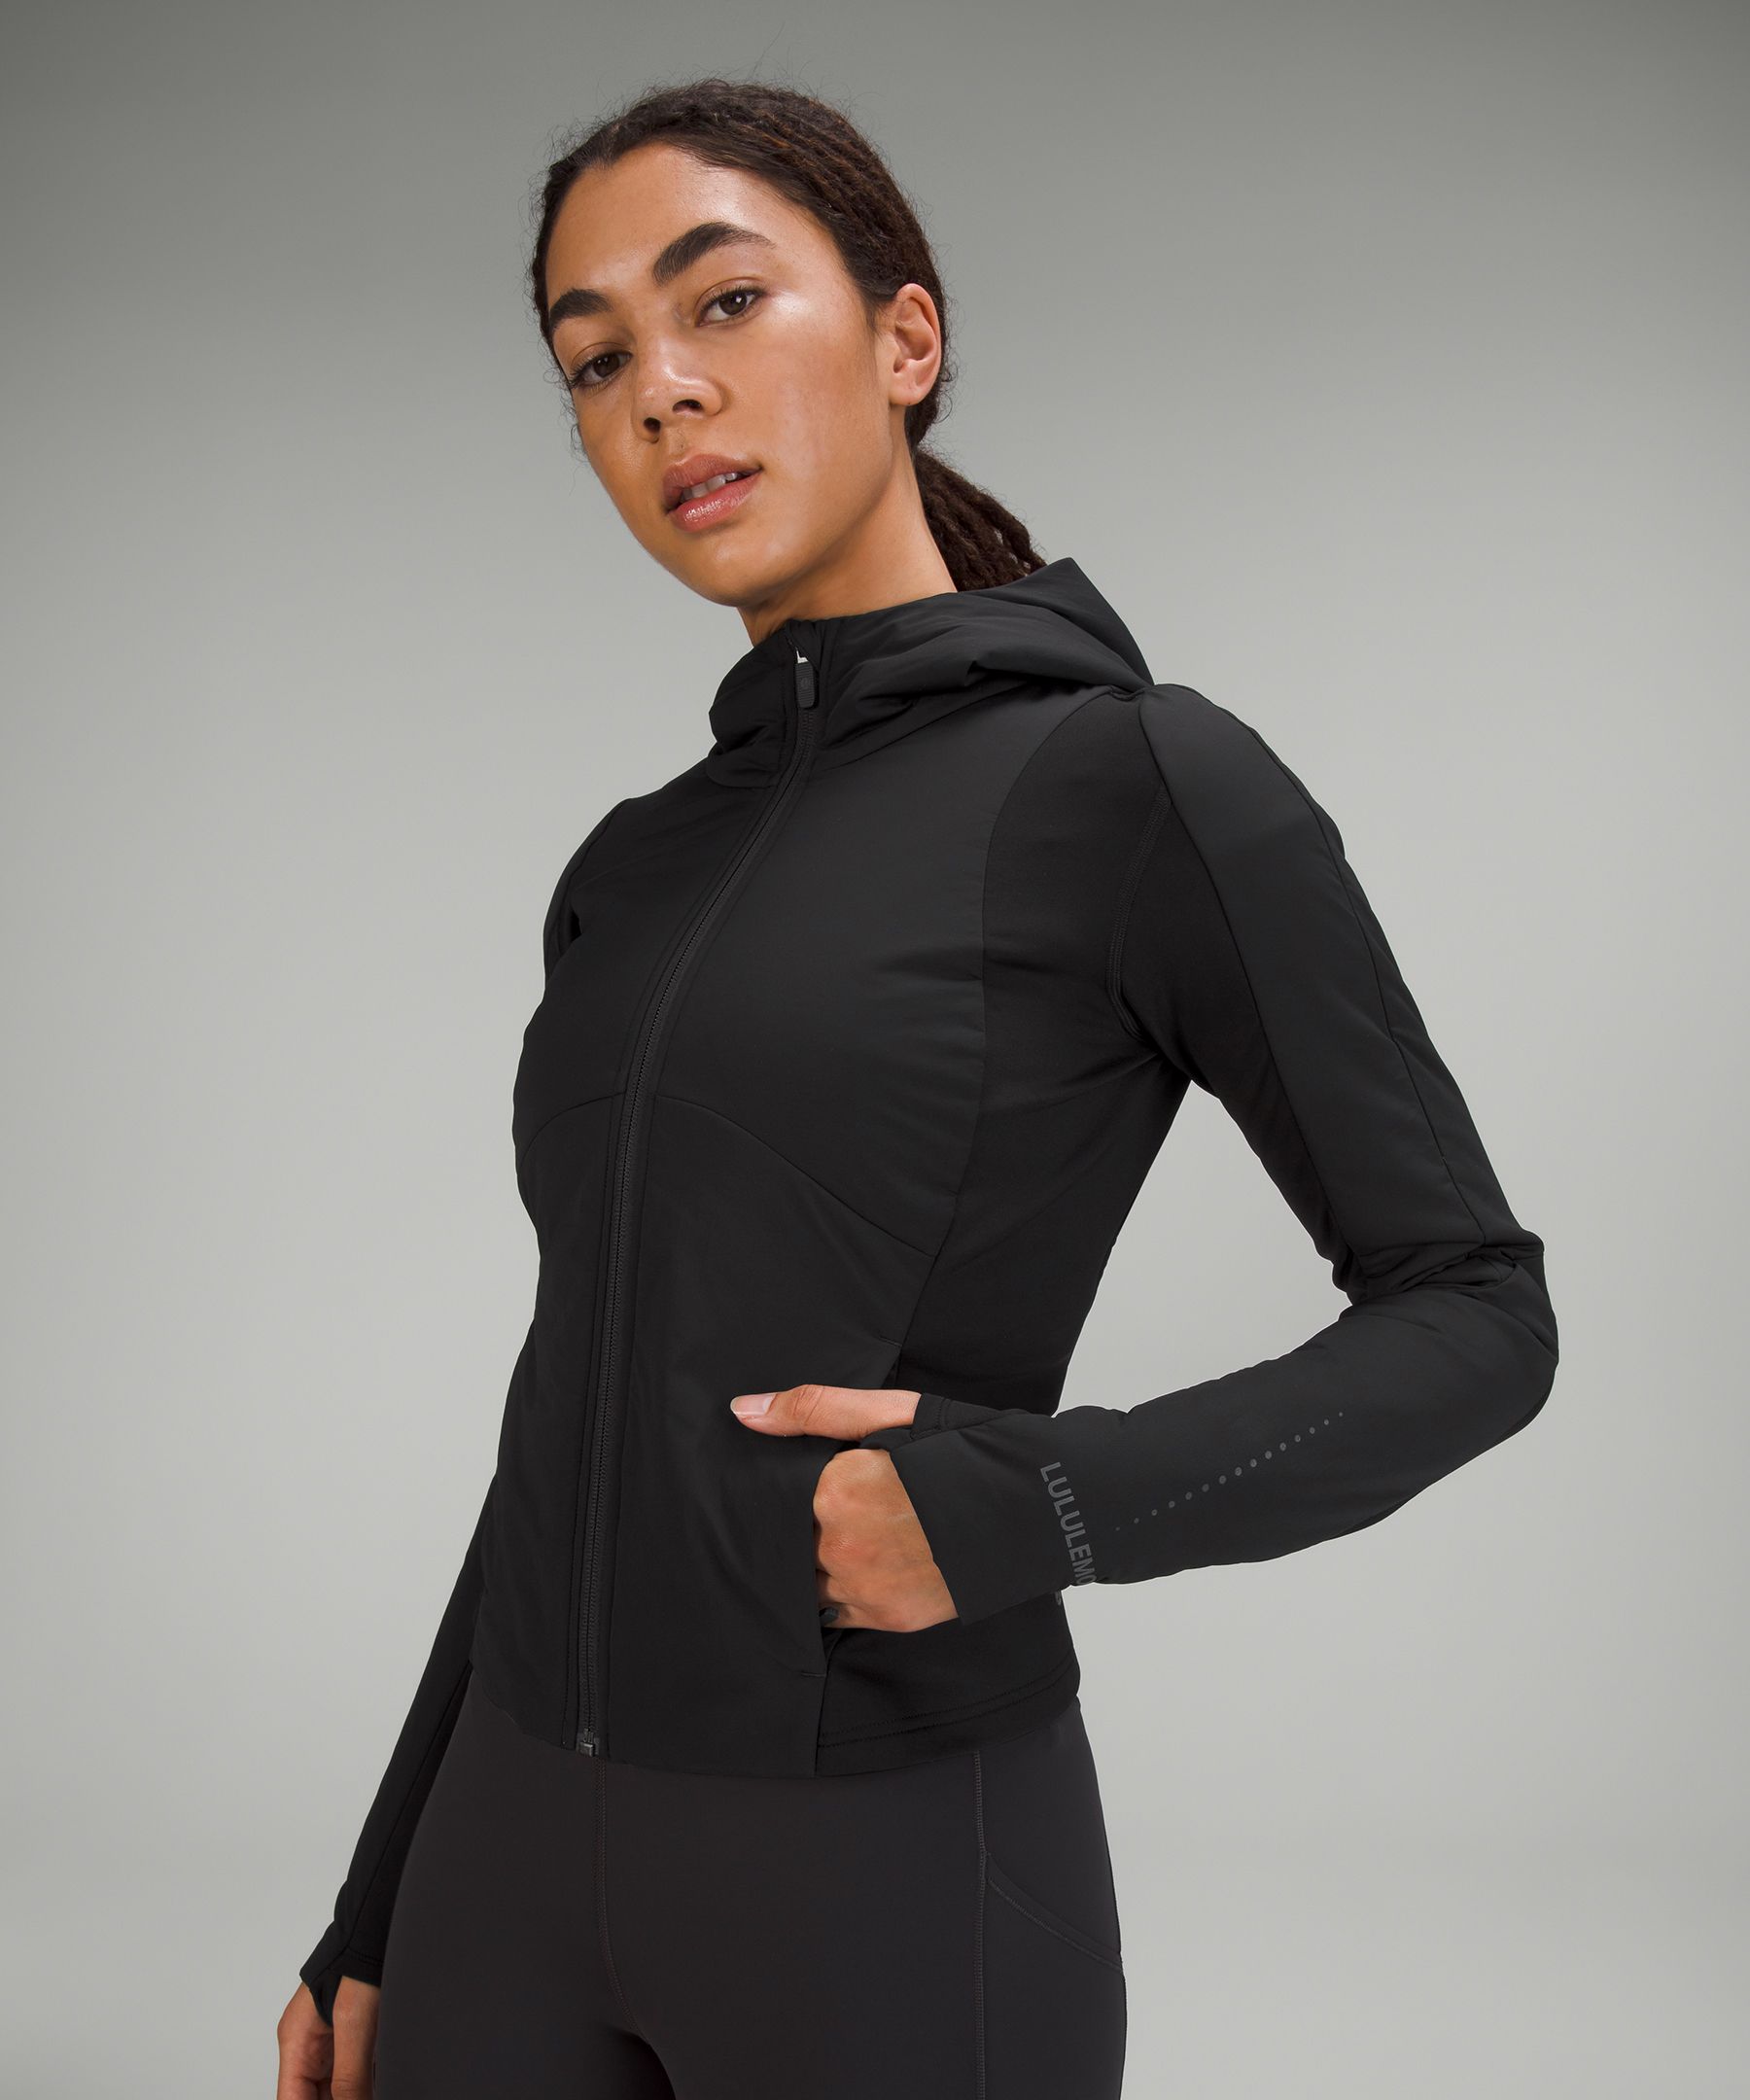 Push Your Pace Jacket | Women's Coats & Jackets | lululemon